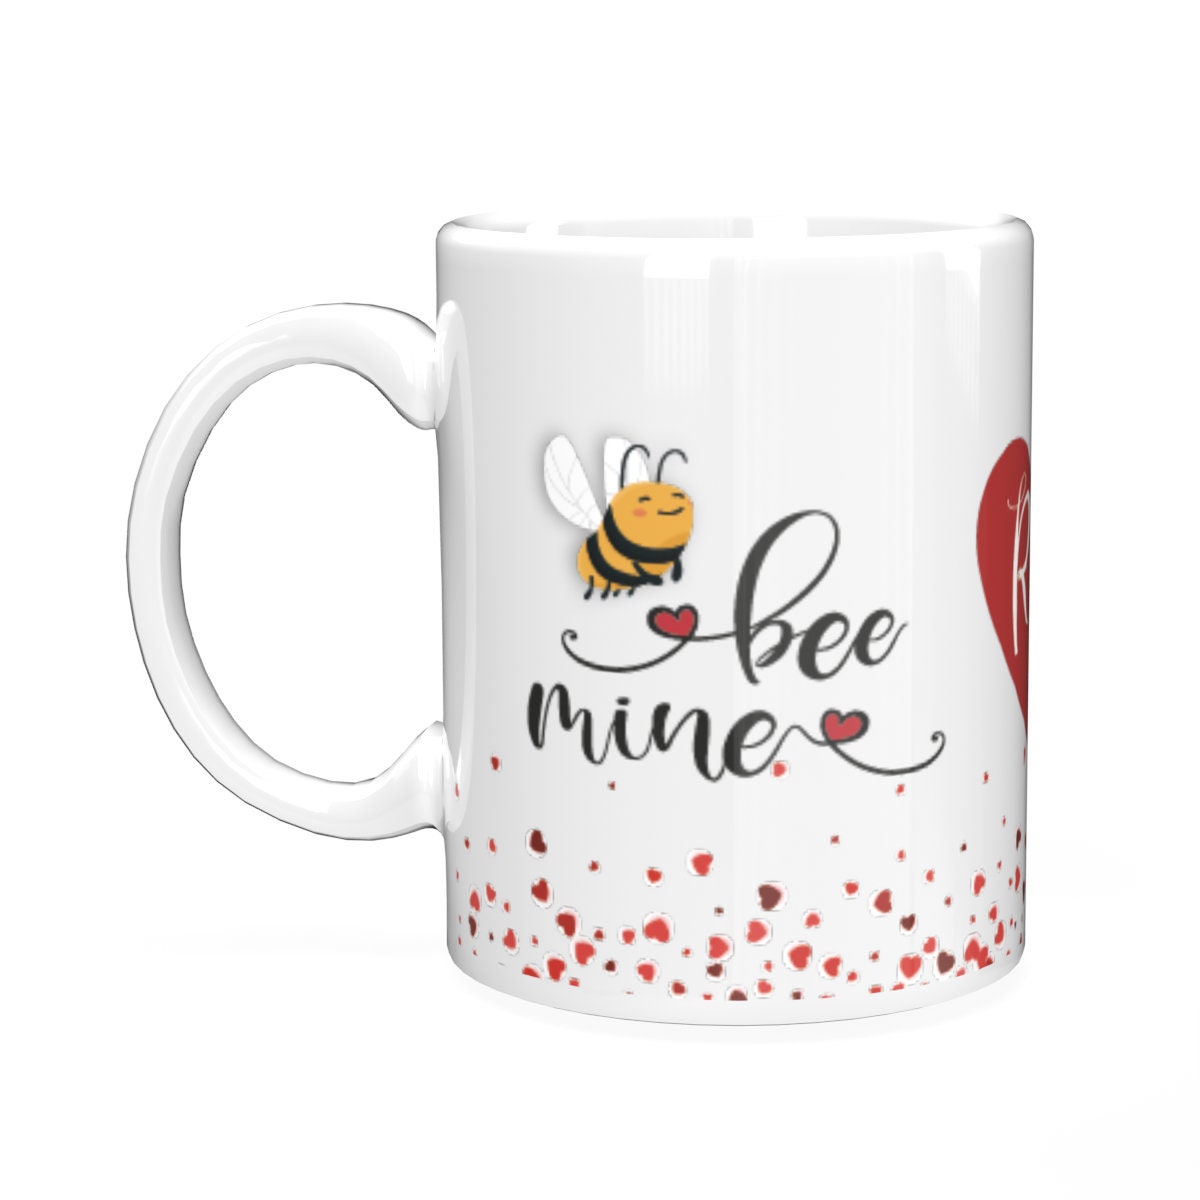 Bee mine personalised mug